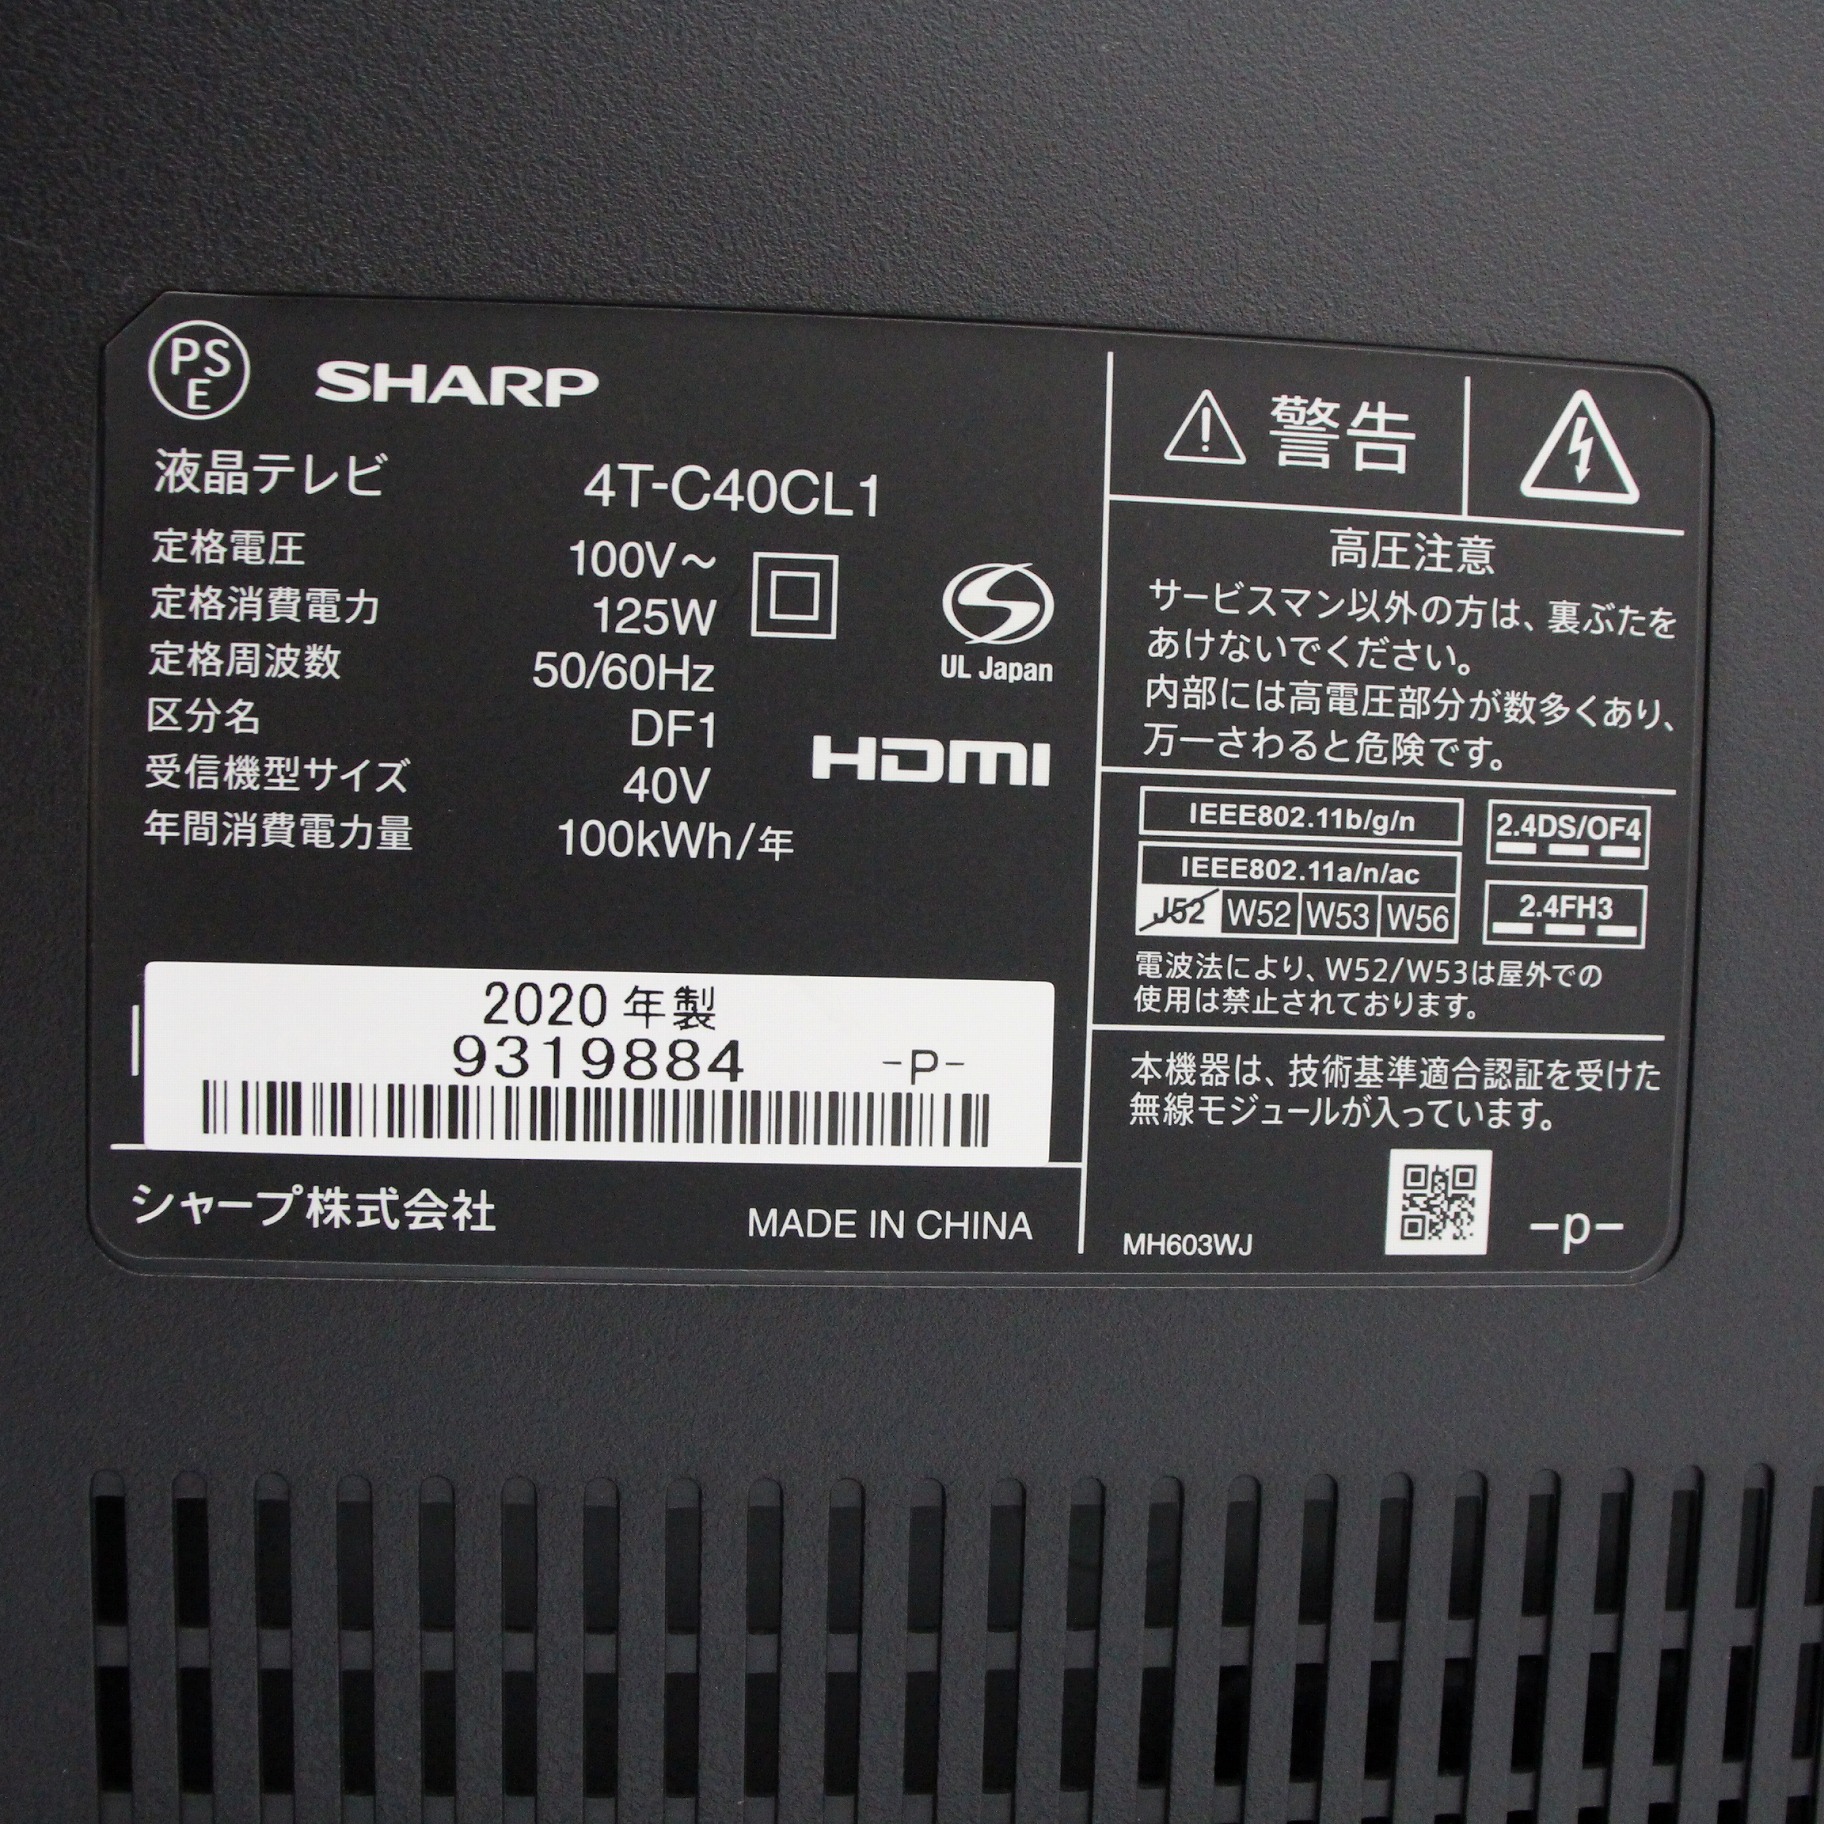 SHARP 4T-C40CL1 液晶テレビ 40インチ 4Kチューナー内蔵